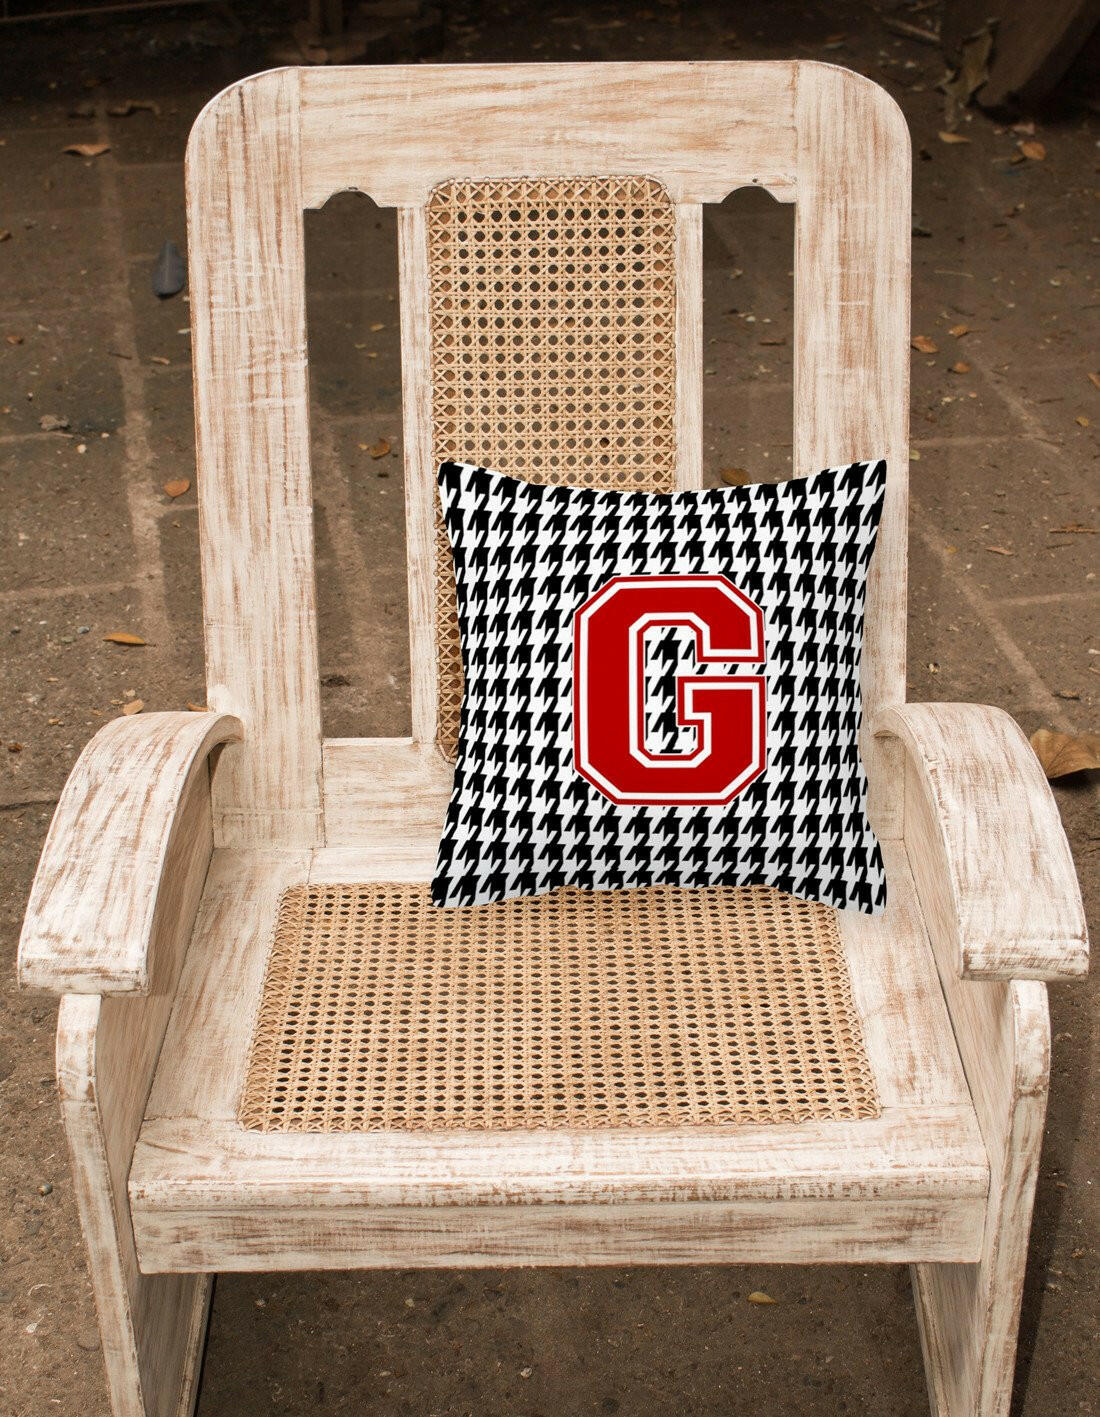 Monogram - Initial G Houndstooth Decorative   Canvas Fabric Pillow CJ1021 - the-store.com